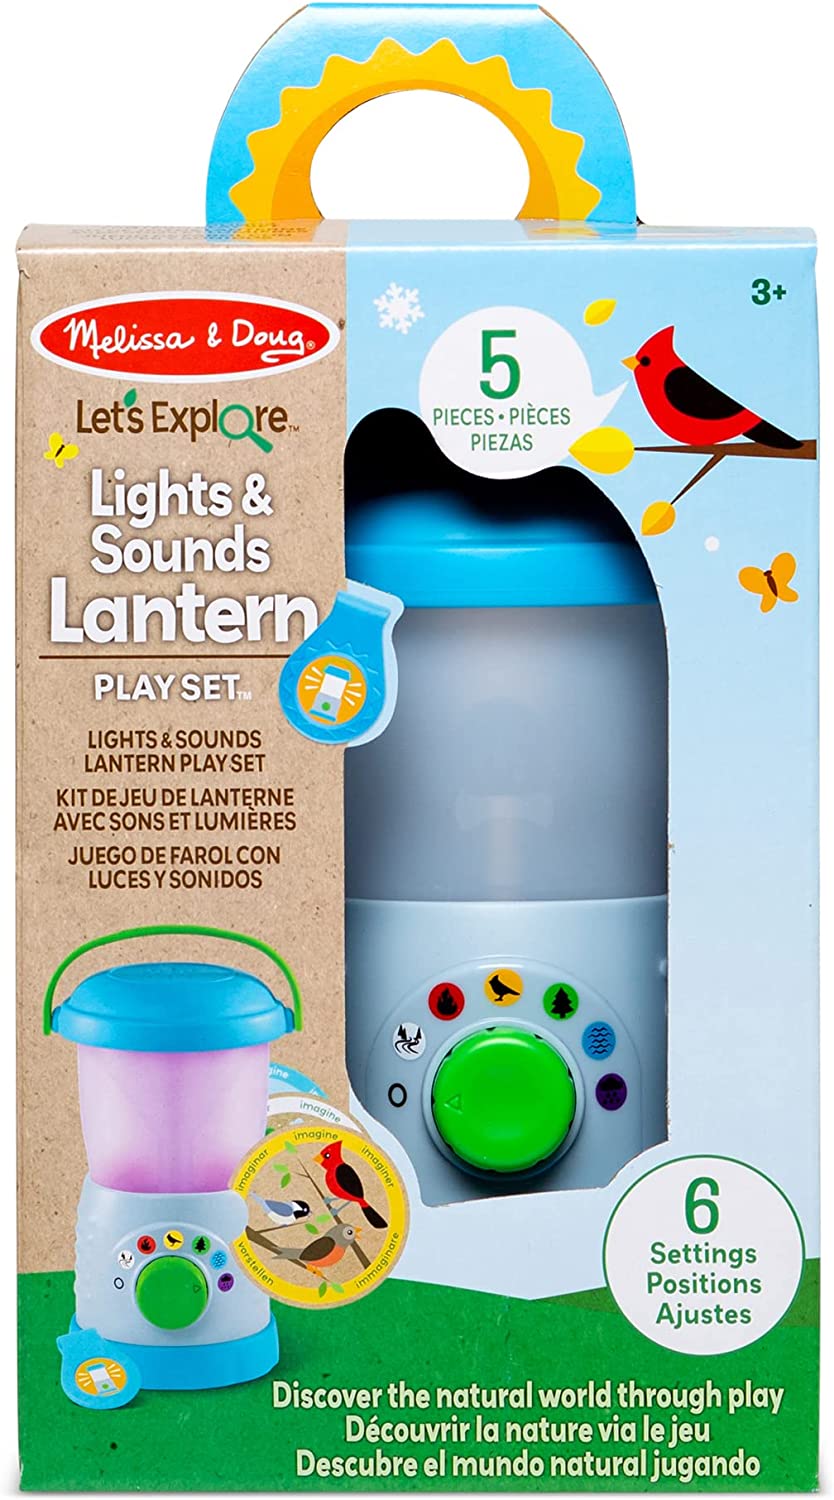 Let's Explore Lights & Sounds Lantern